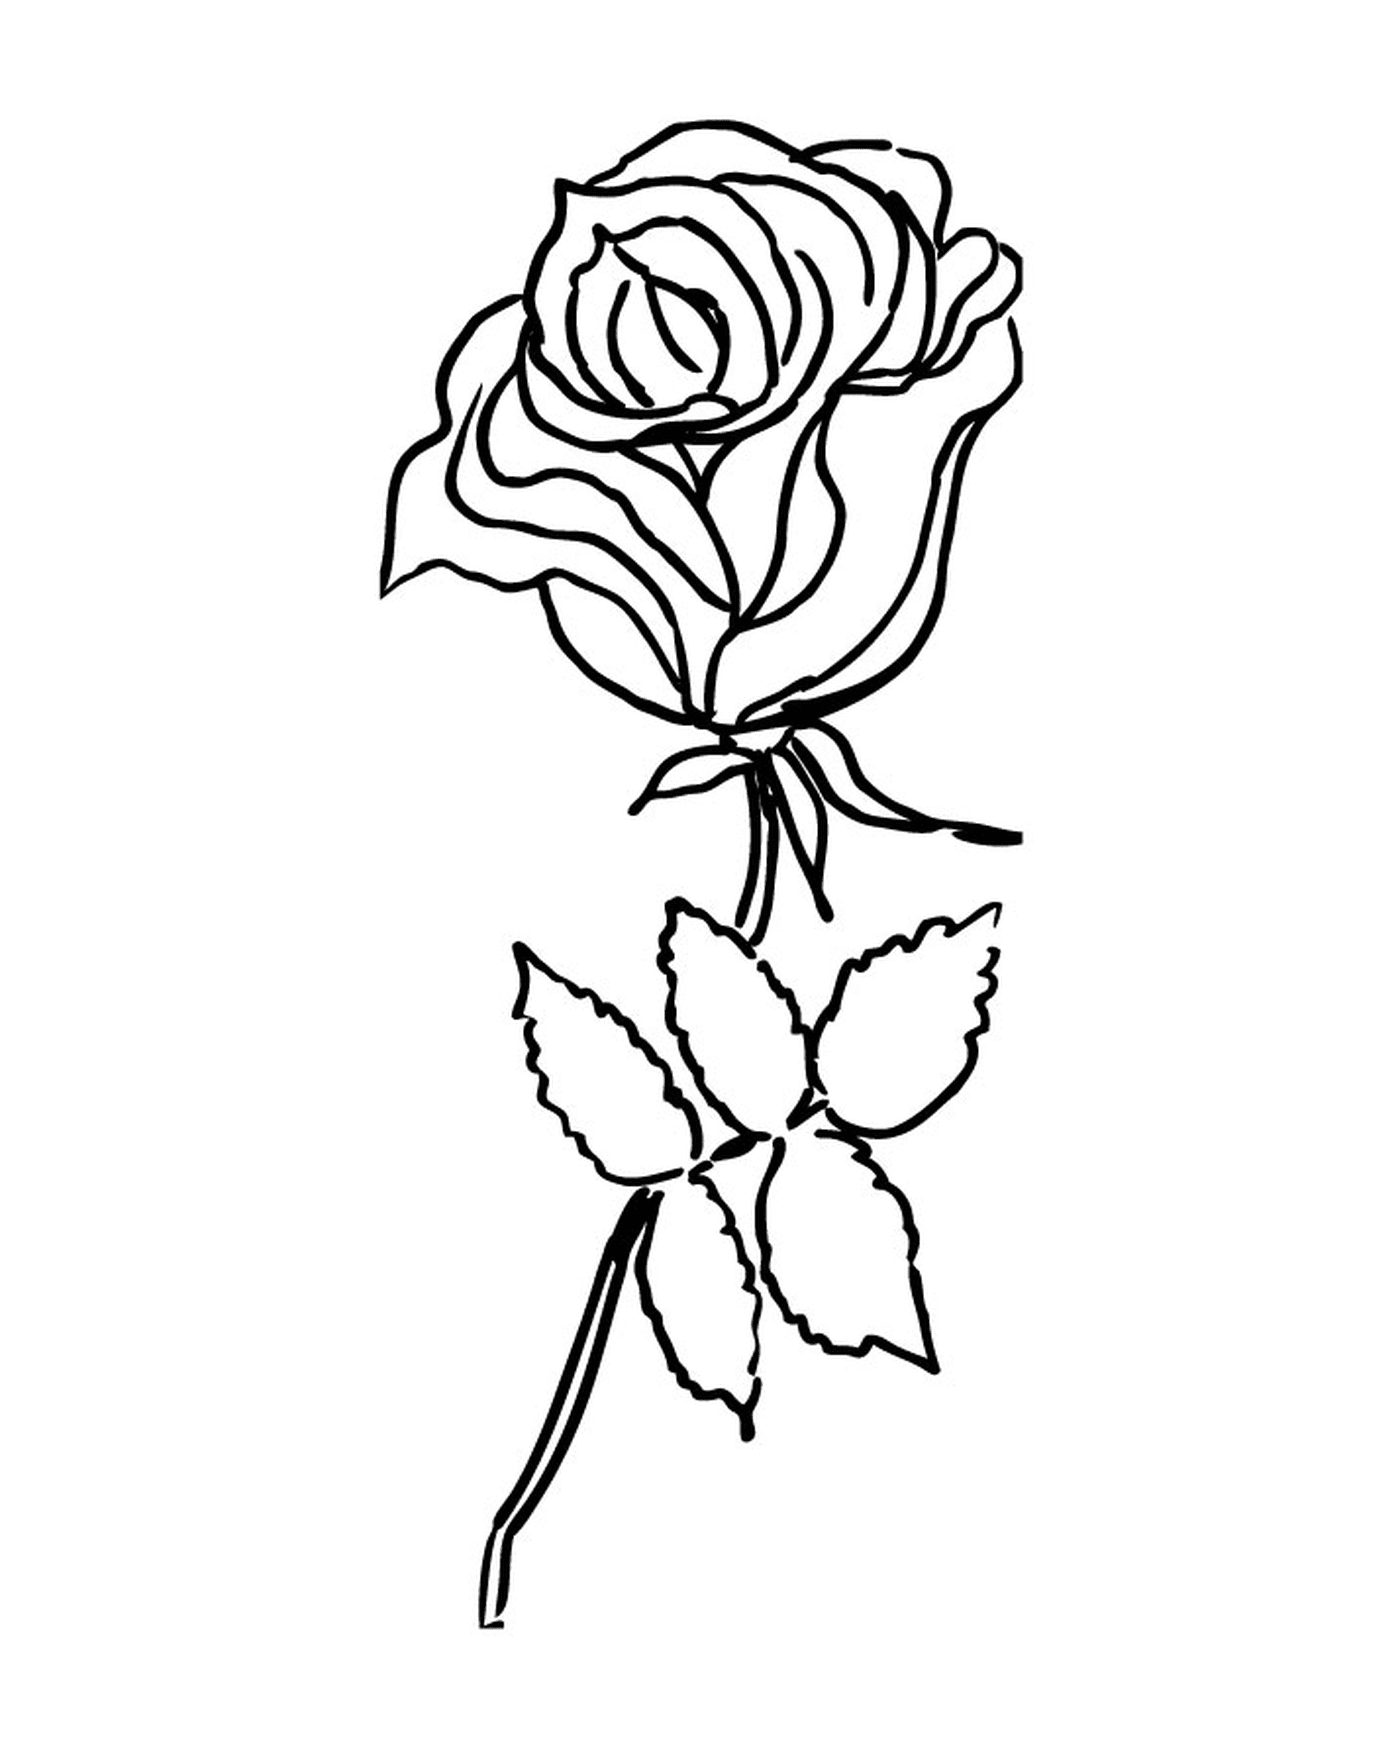   Rose simple et élégante 